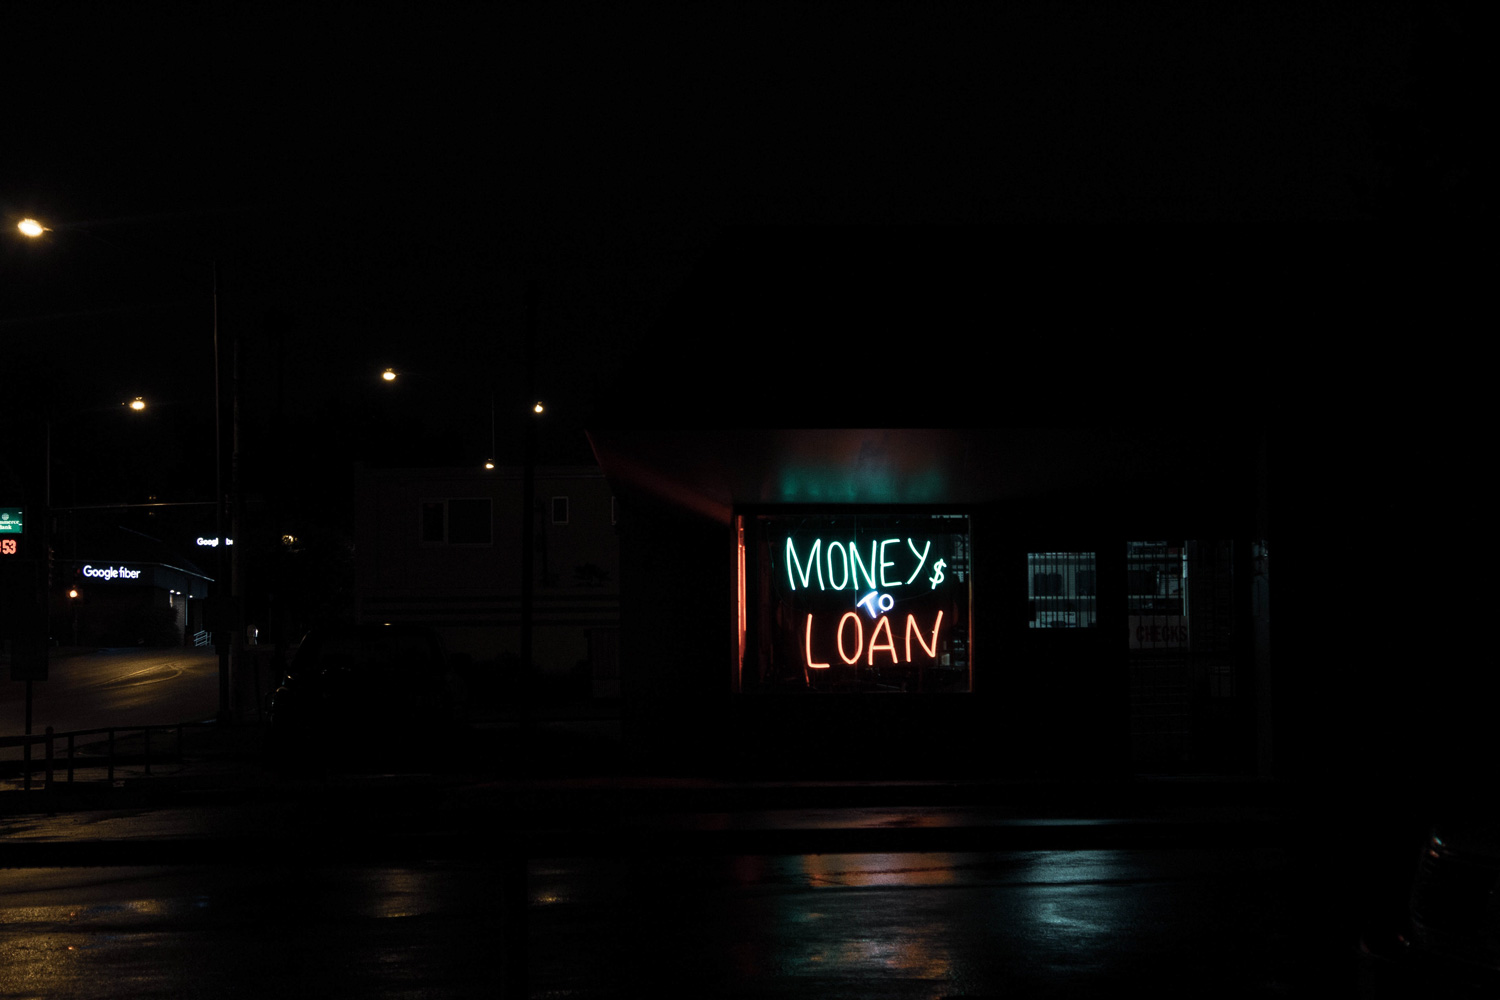 money loan neon sign in store window